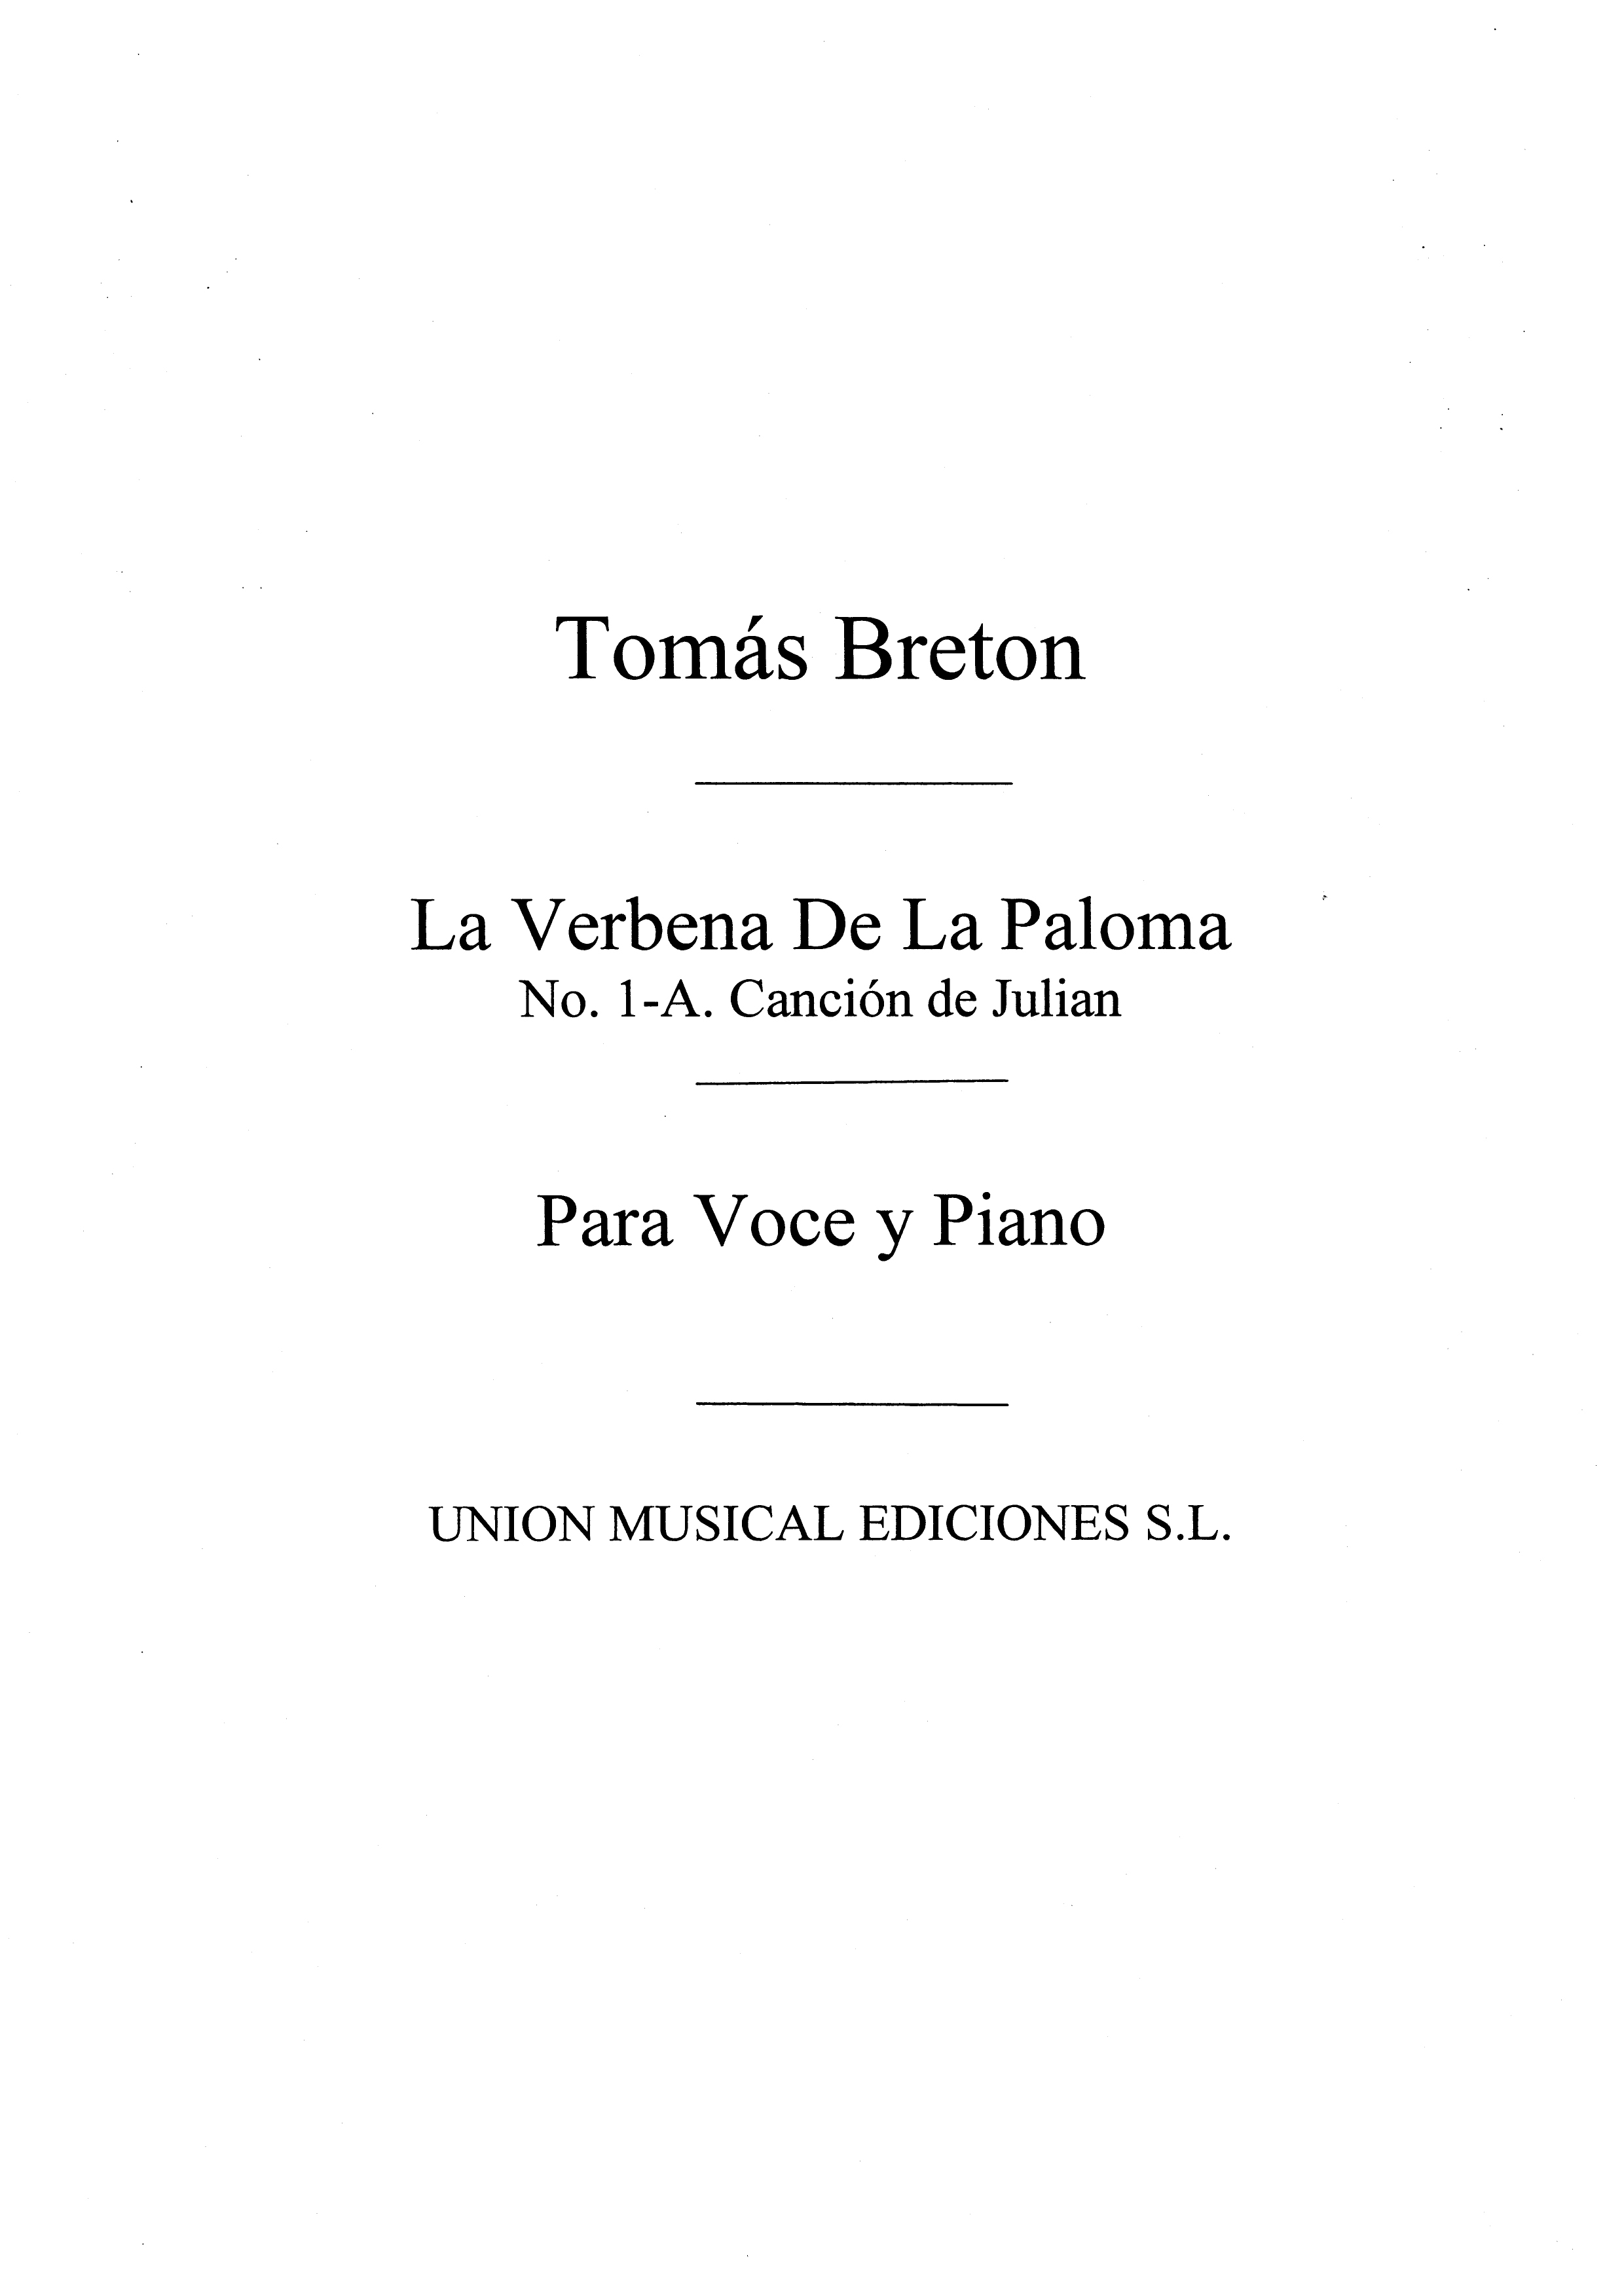 Breton Cancion De Julian No.1a (From La Verbena De La Paloma) Vce/Pf